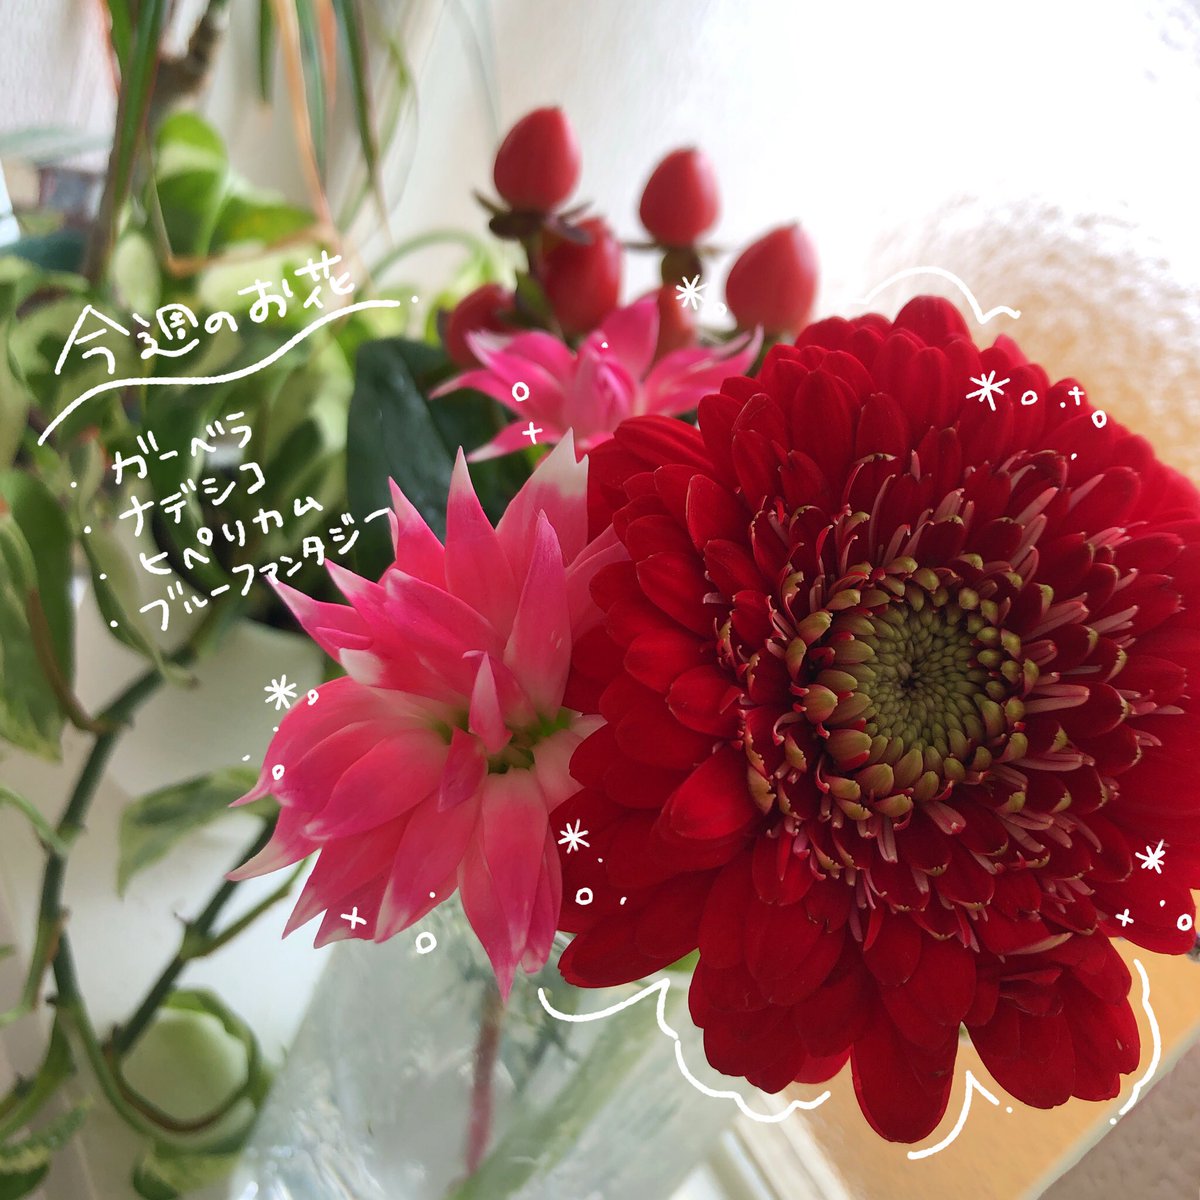 #花の定期便 #bloomee 【@bloomee_jp 】さんのアンバサダーをさせて頂くことになりました🌷.*

家にお花があるだけで癒される〜!
今週はこんなにかわいいお花がポスト投函されておりました📮 ___🌼💌 .

 #ブルーミー
#花のサブスク
 #PR

https://t.co/v0VwlvpkK6 